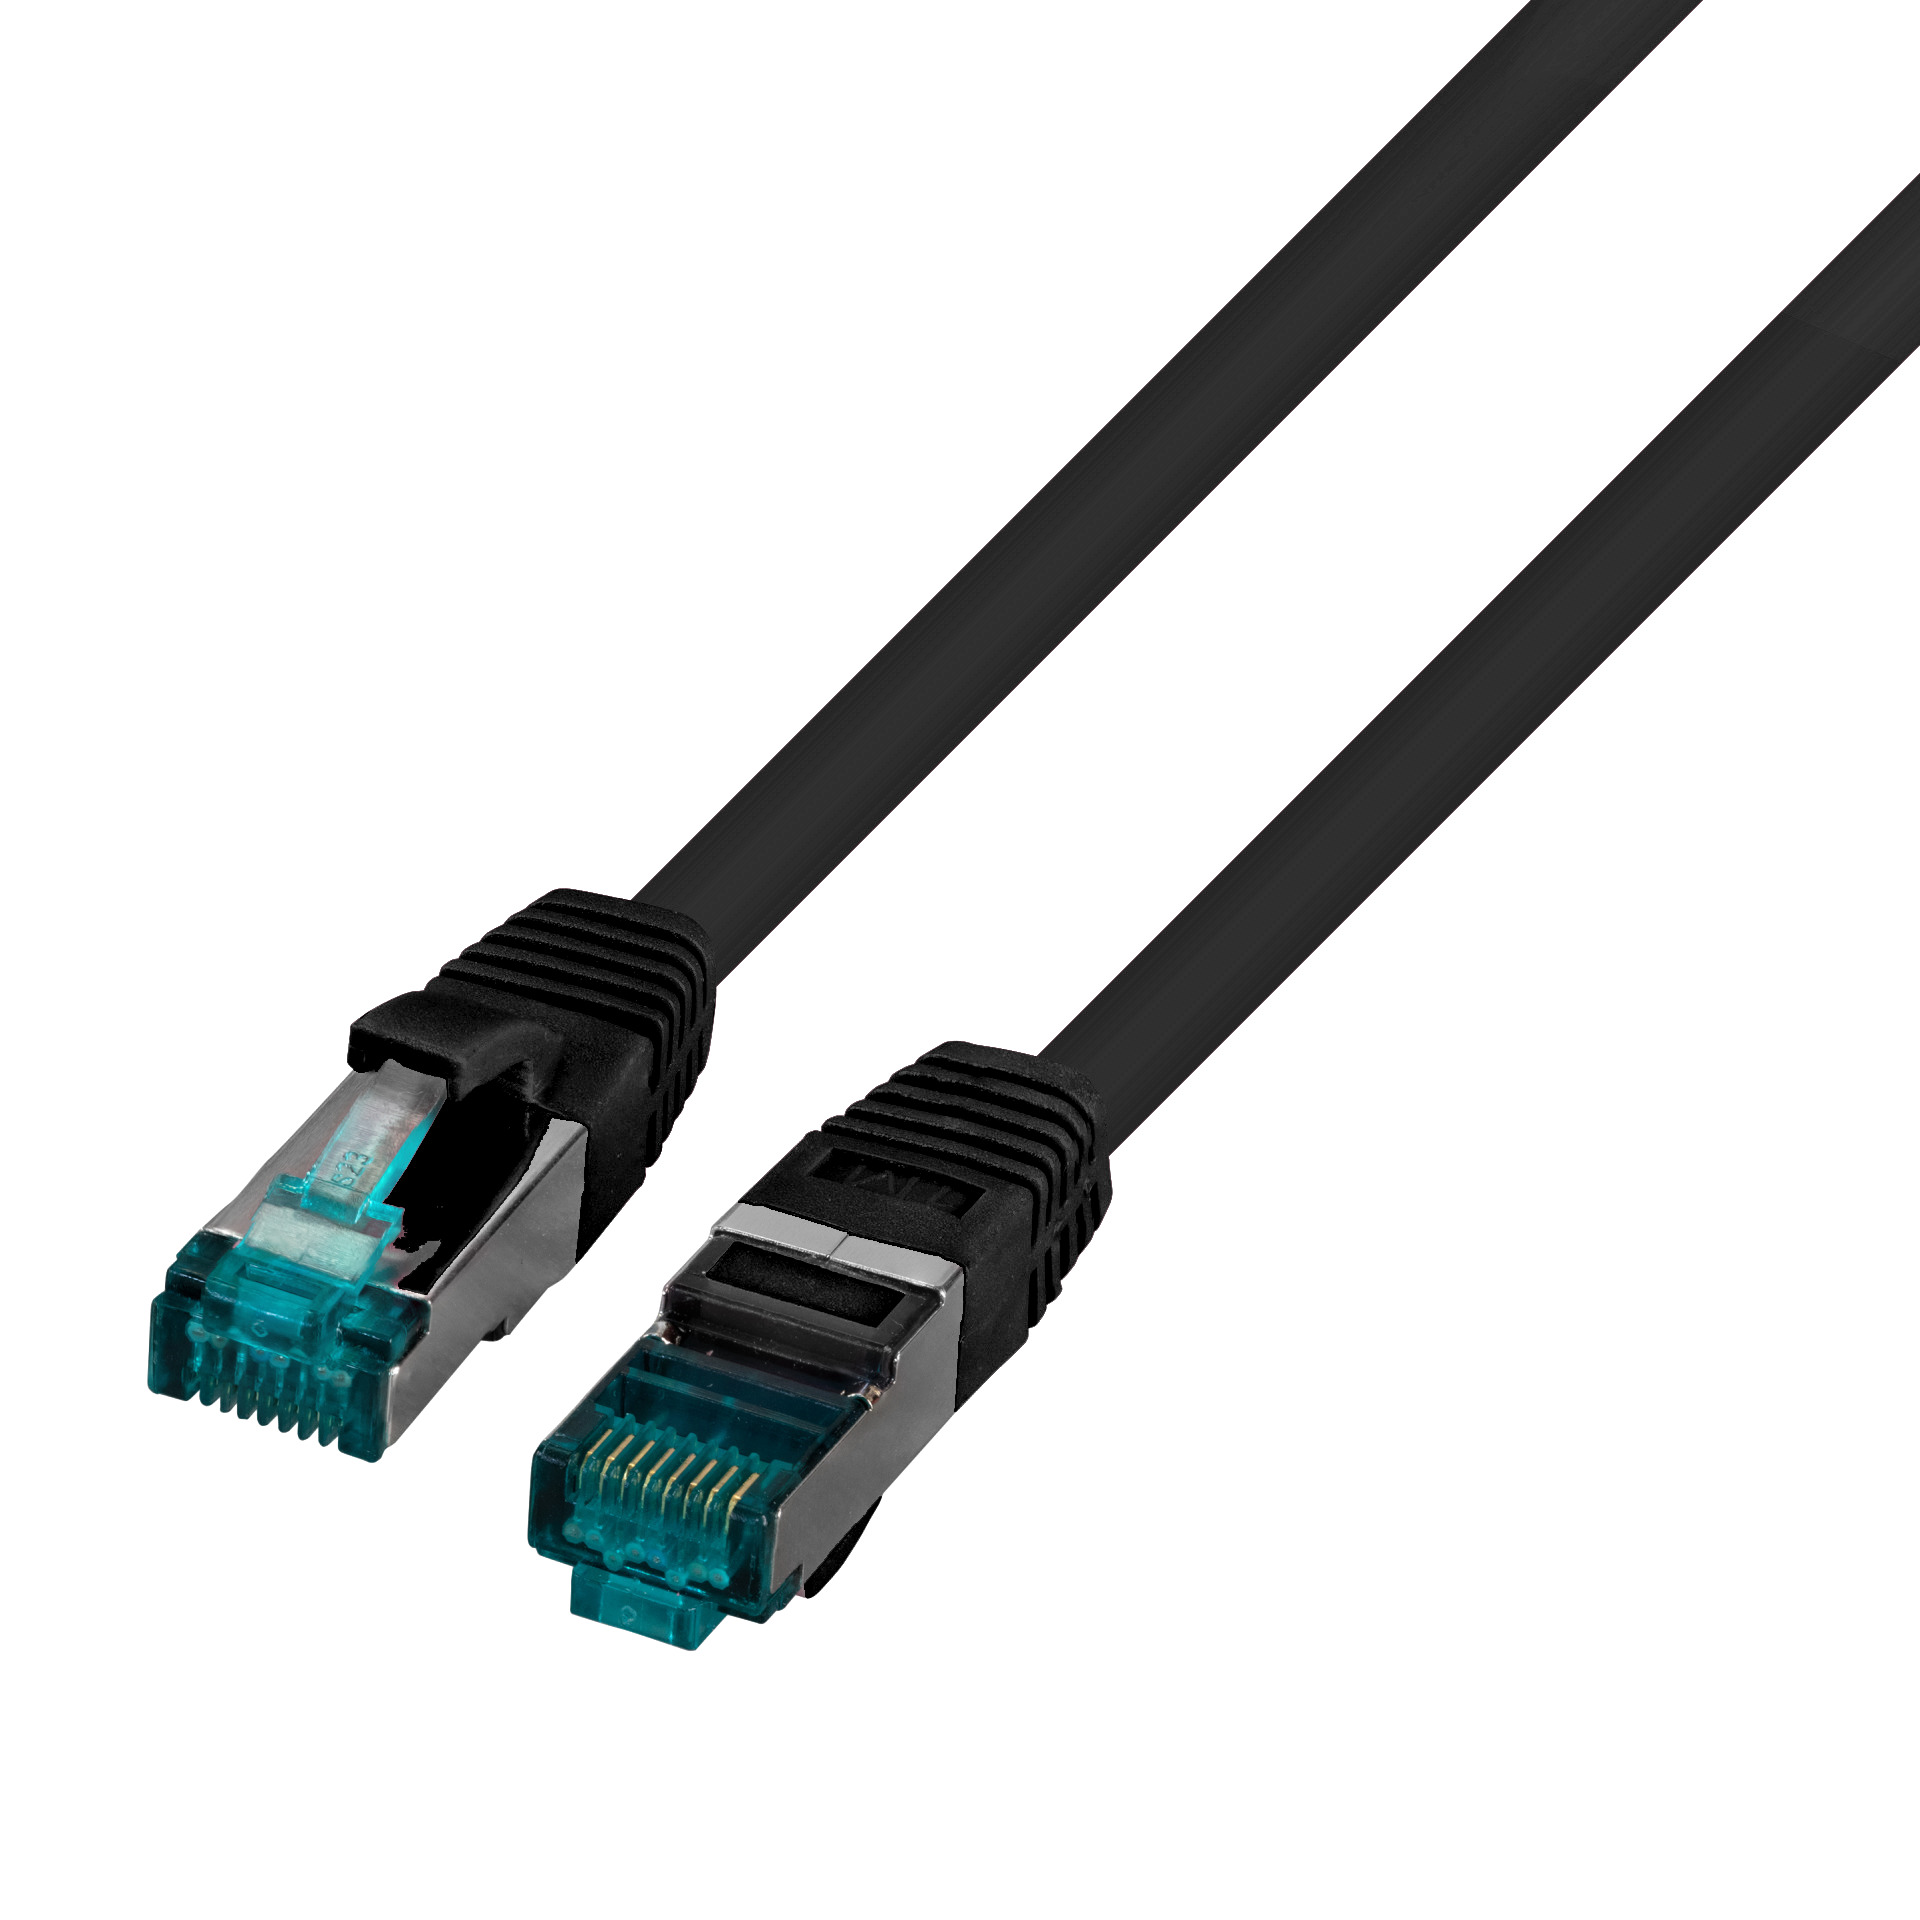 RJ45 Patch cable S/FTP, Cat.6A, LSZH, 1m, black